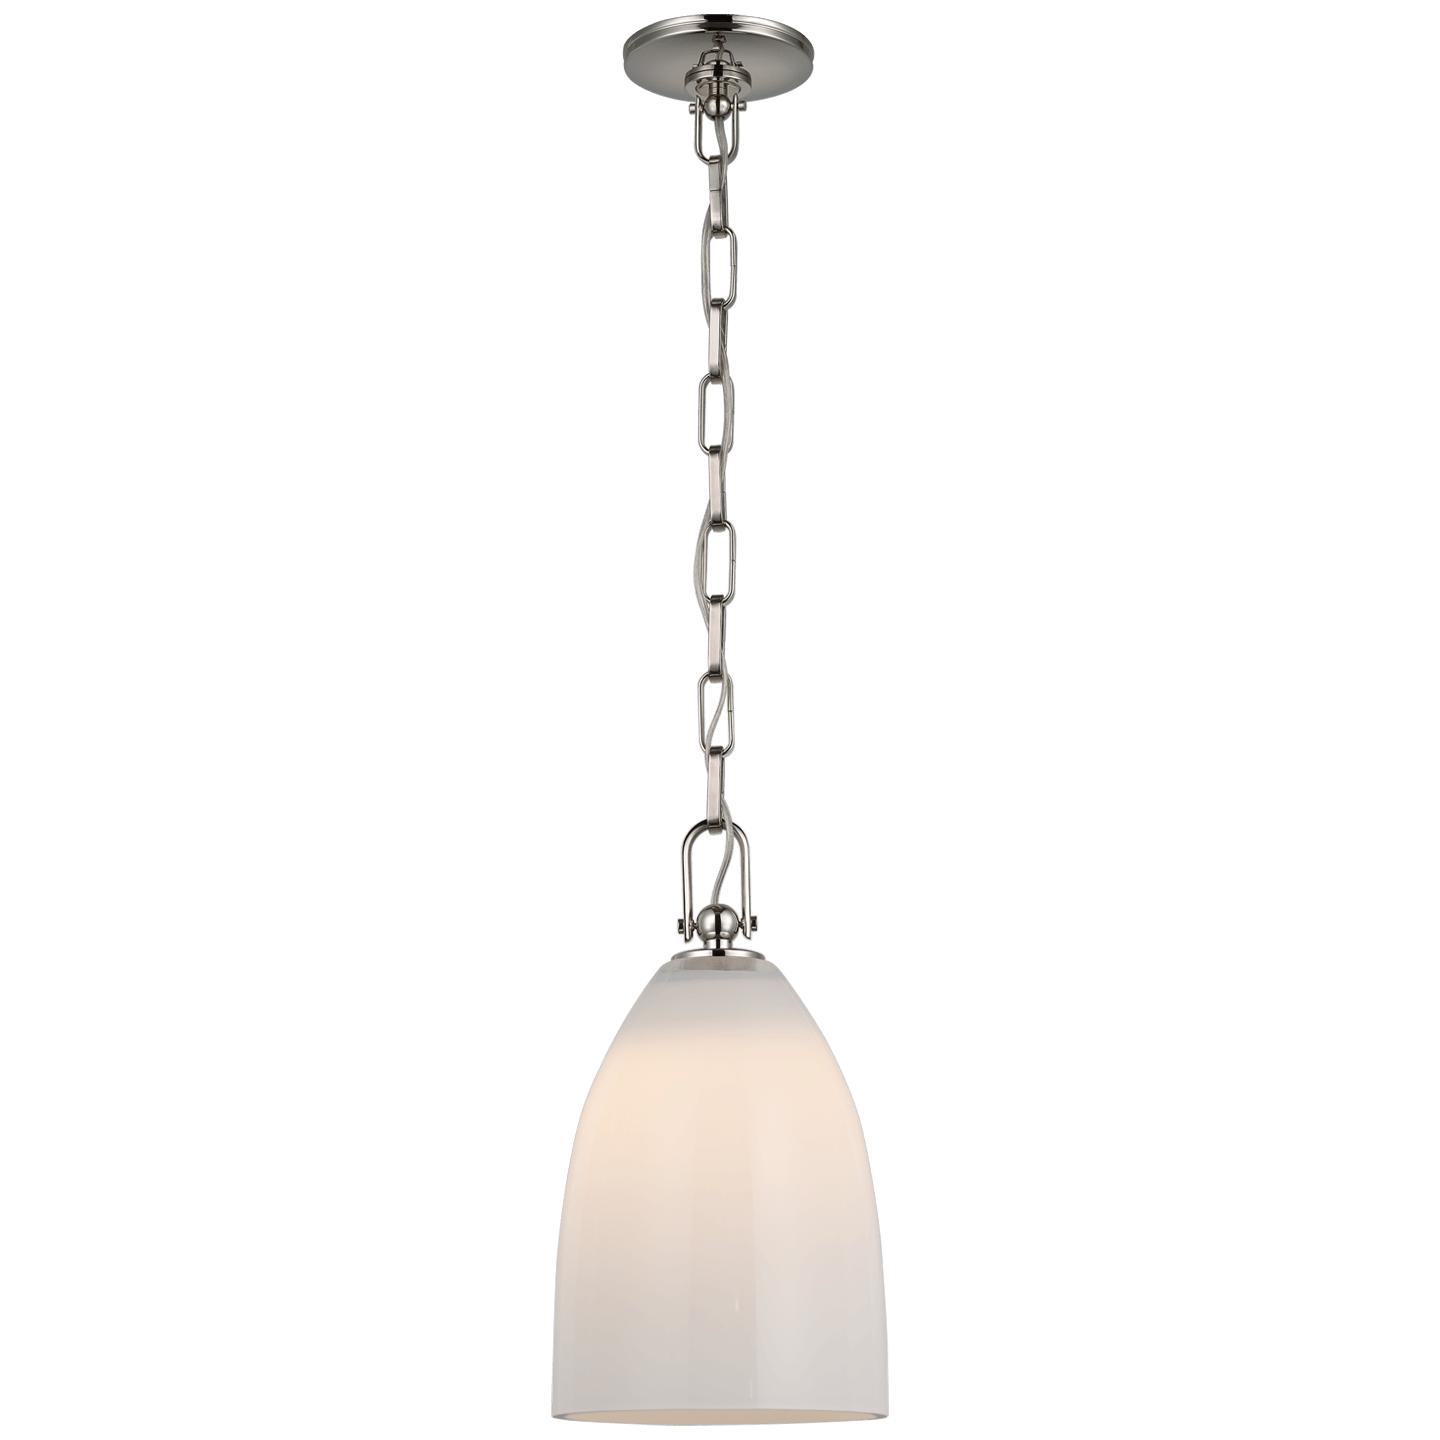 Купить Подвесной светильник Andros Medium Pendant в интернет-магазине roooms.ru